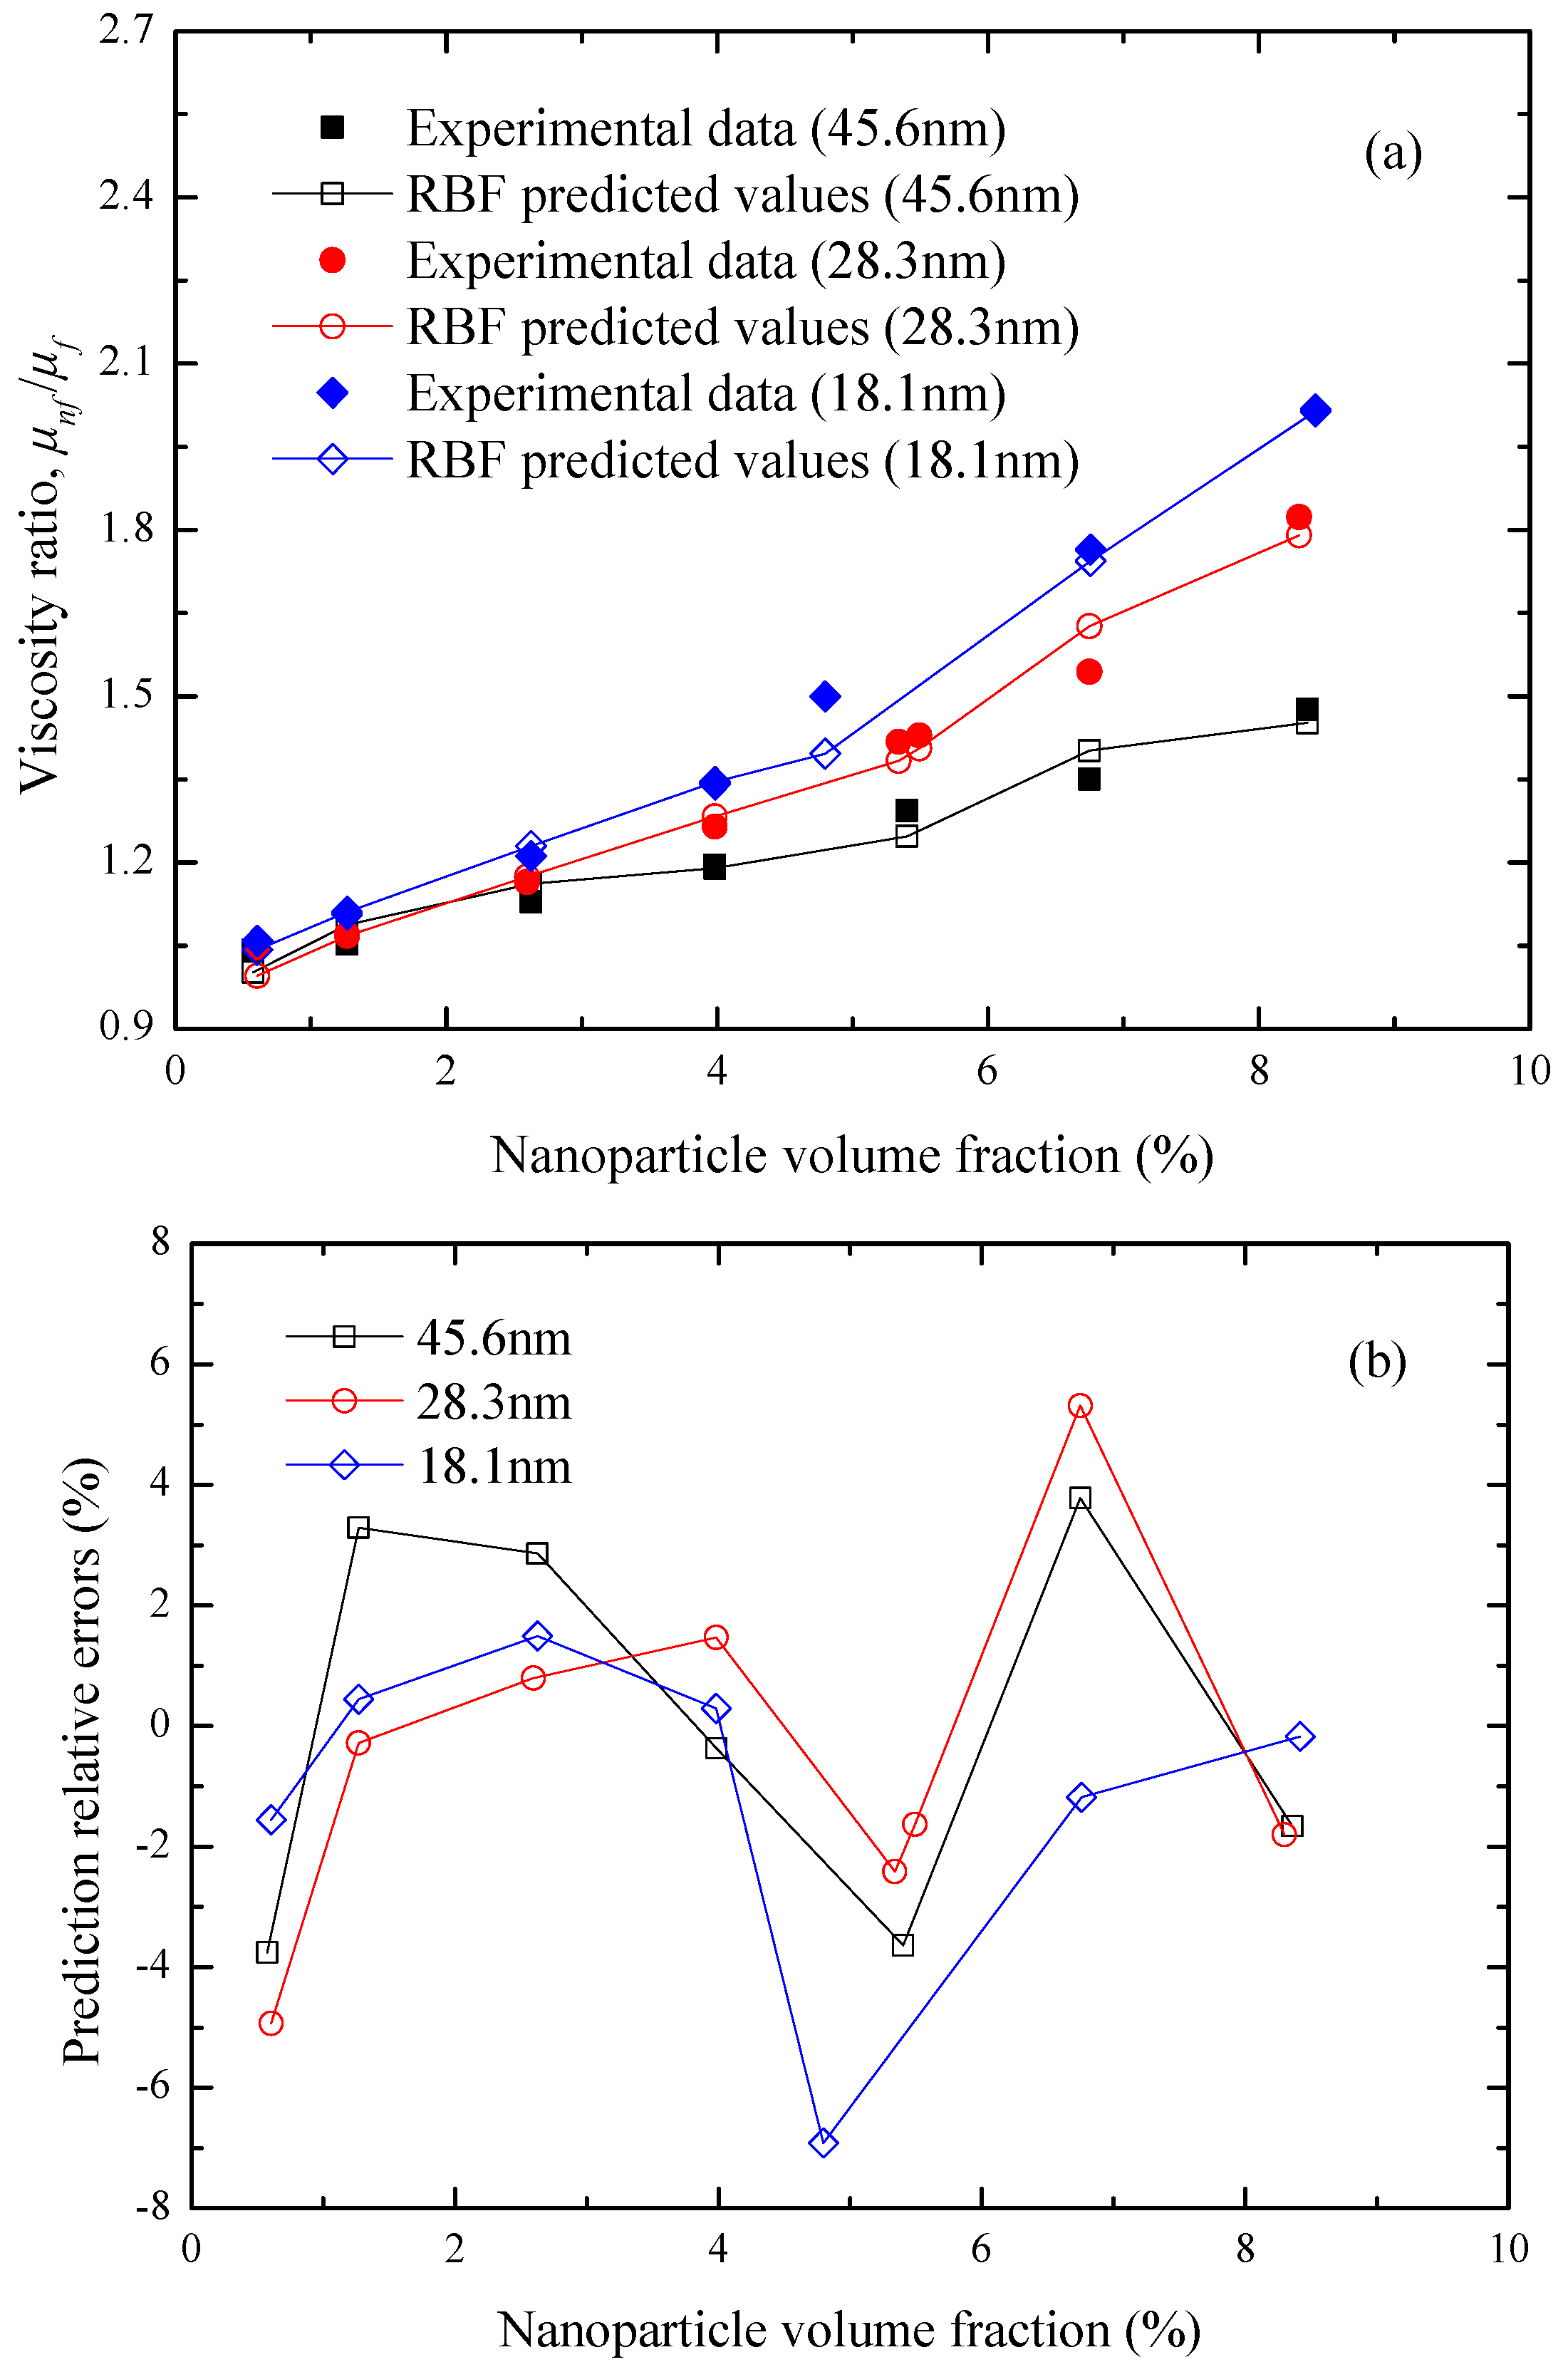 Mono Ethylene Glycol Specific Gravity Chart